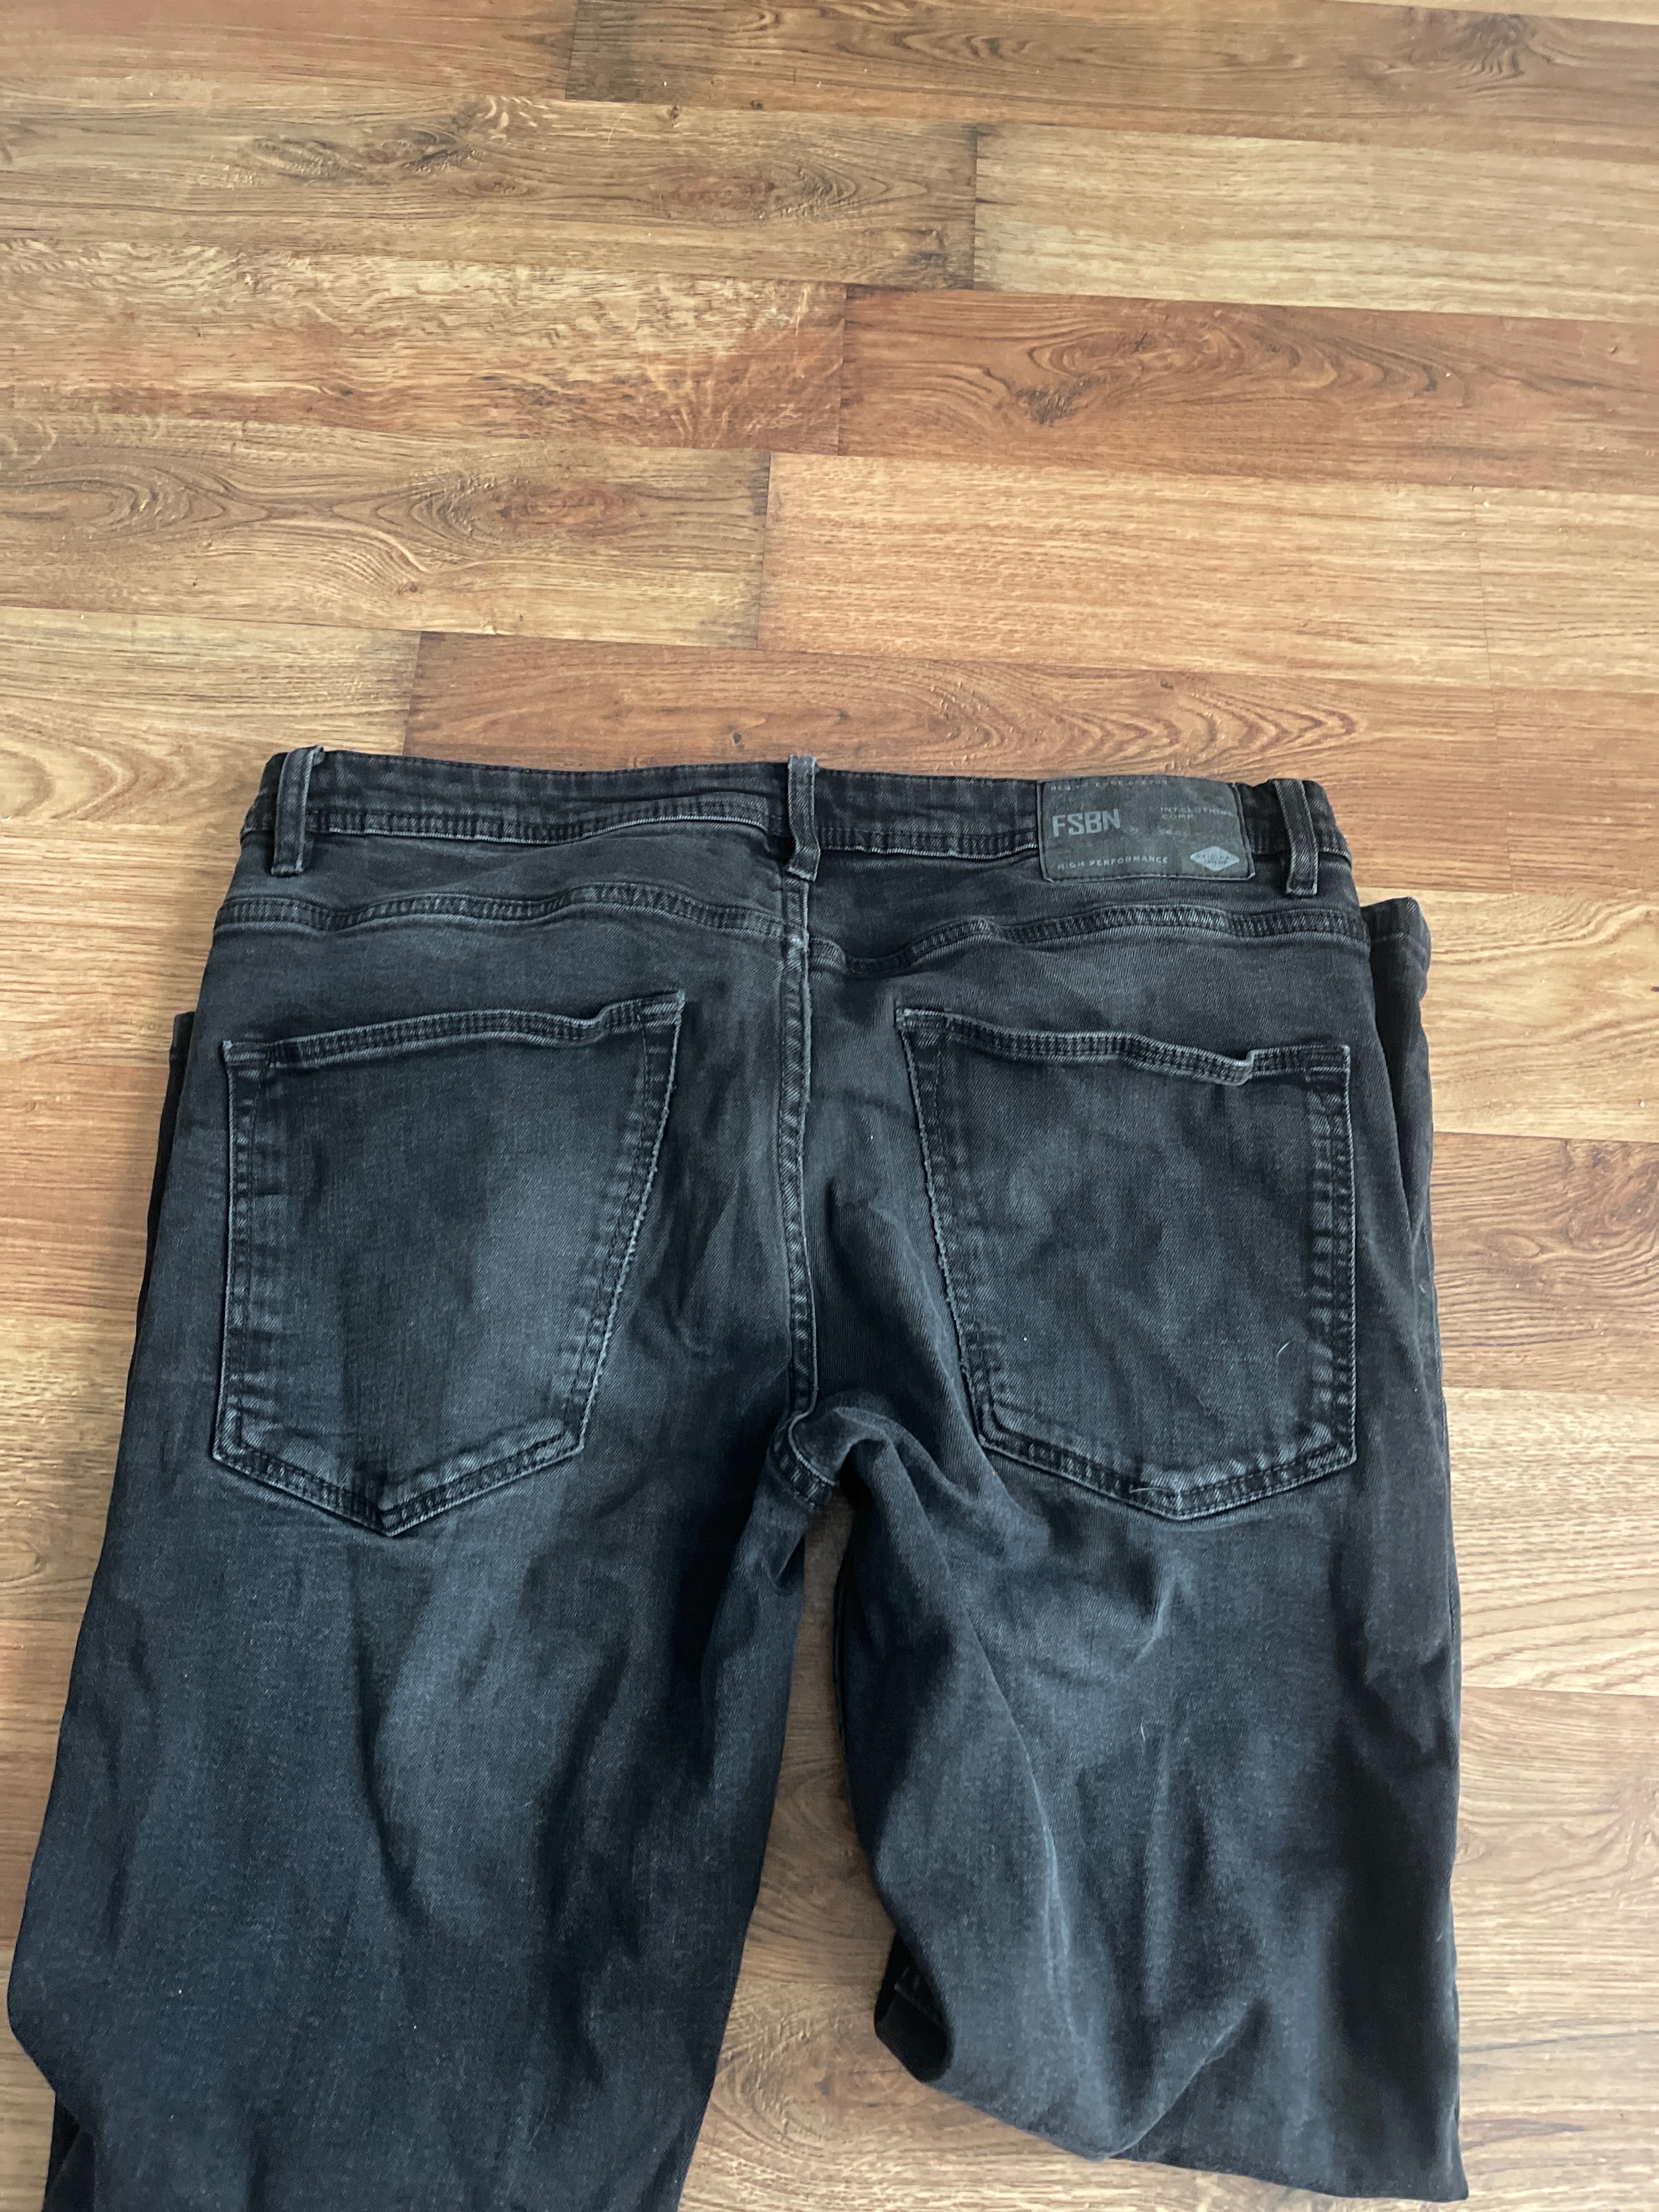 Spodnie męskie jeans rozm 32/30 polecam